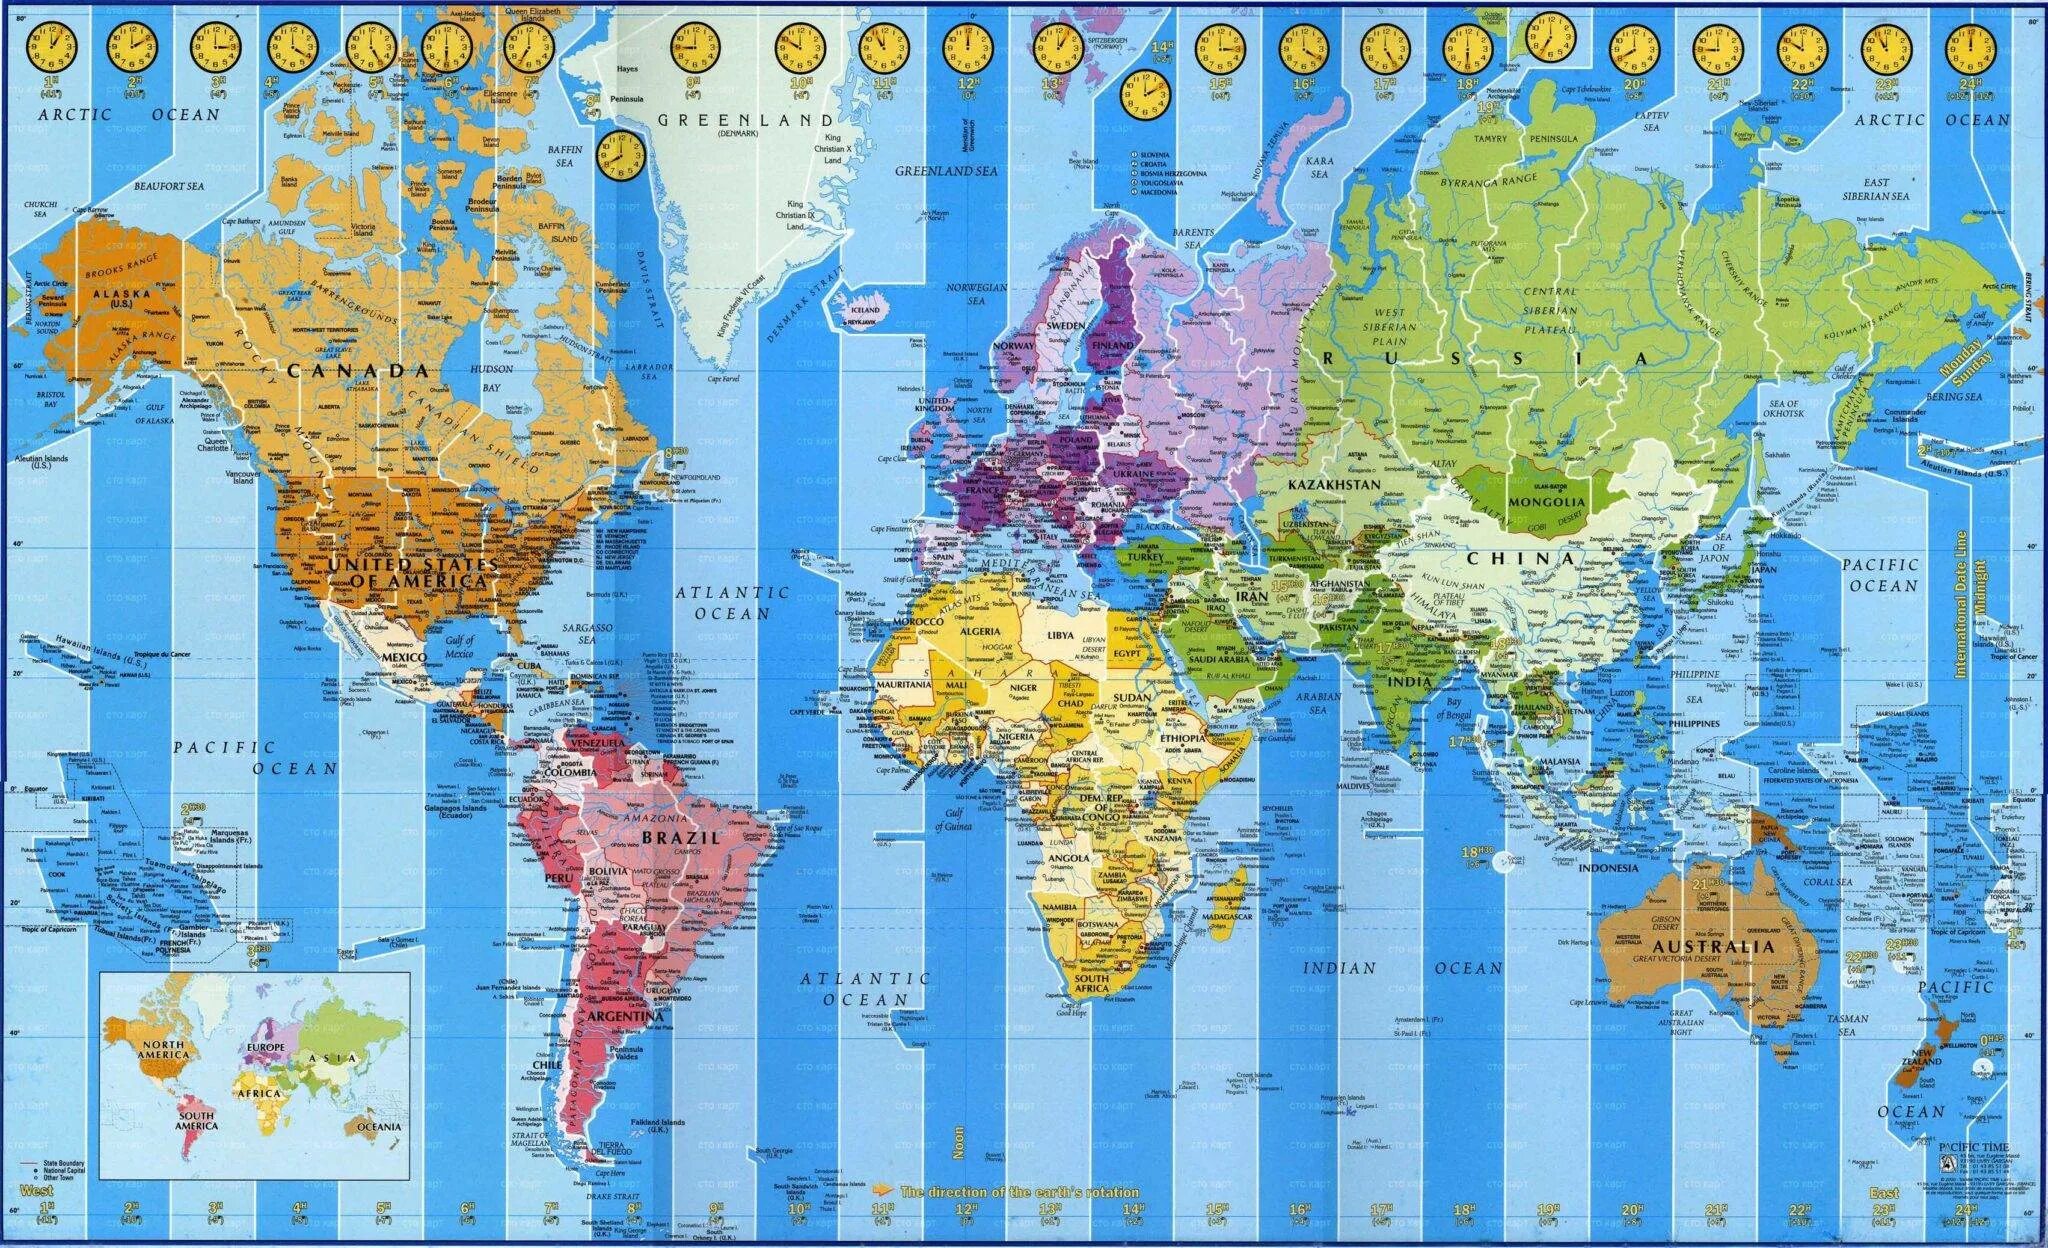 Разница во времени бразилии и франции. Карта часовых поясов Евразии.